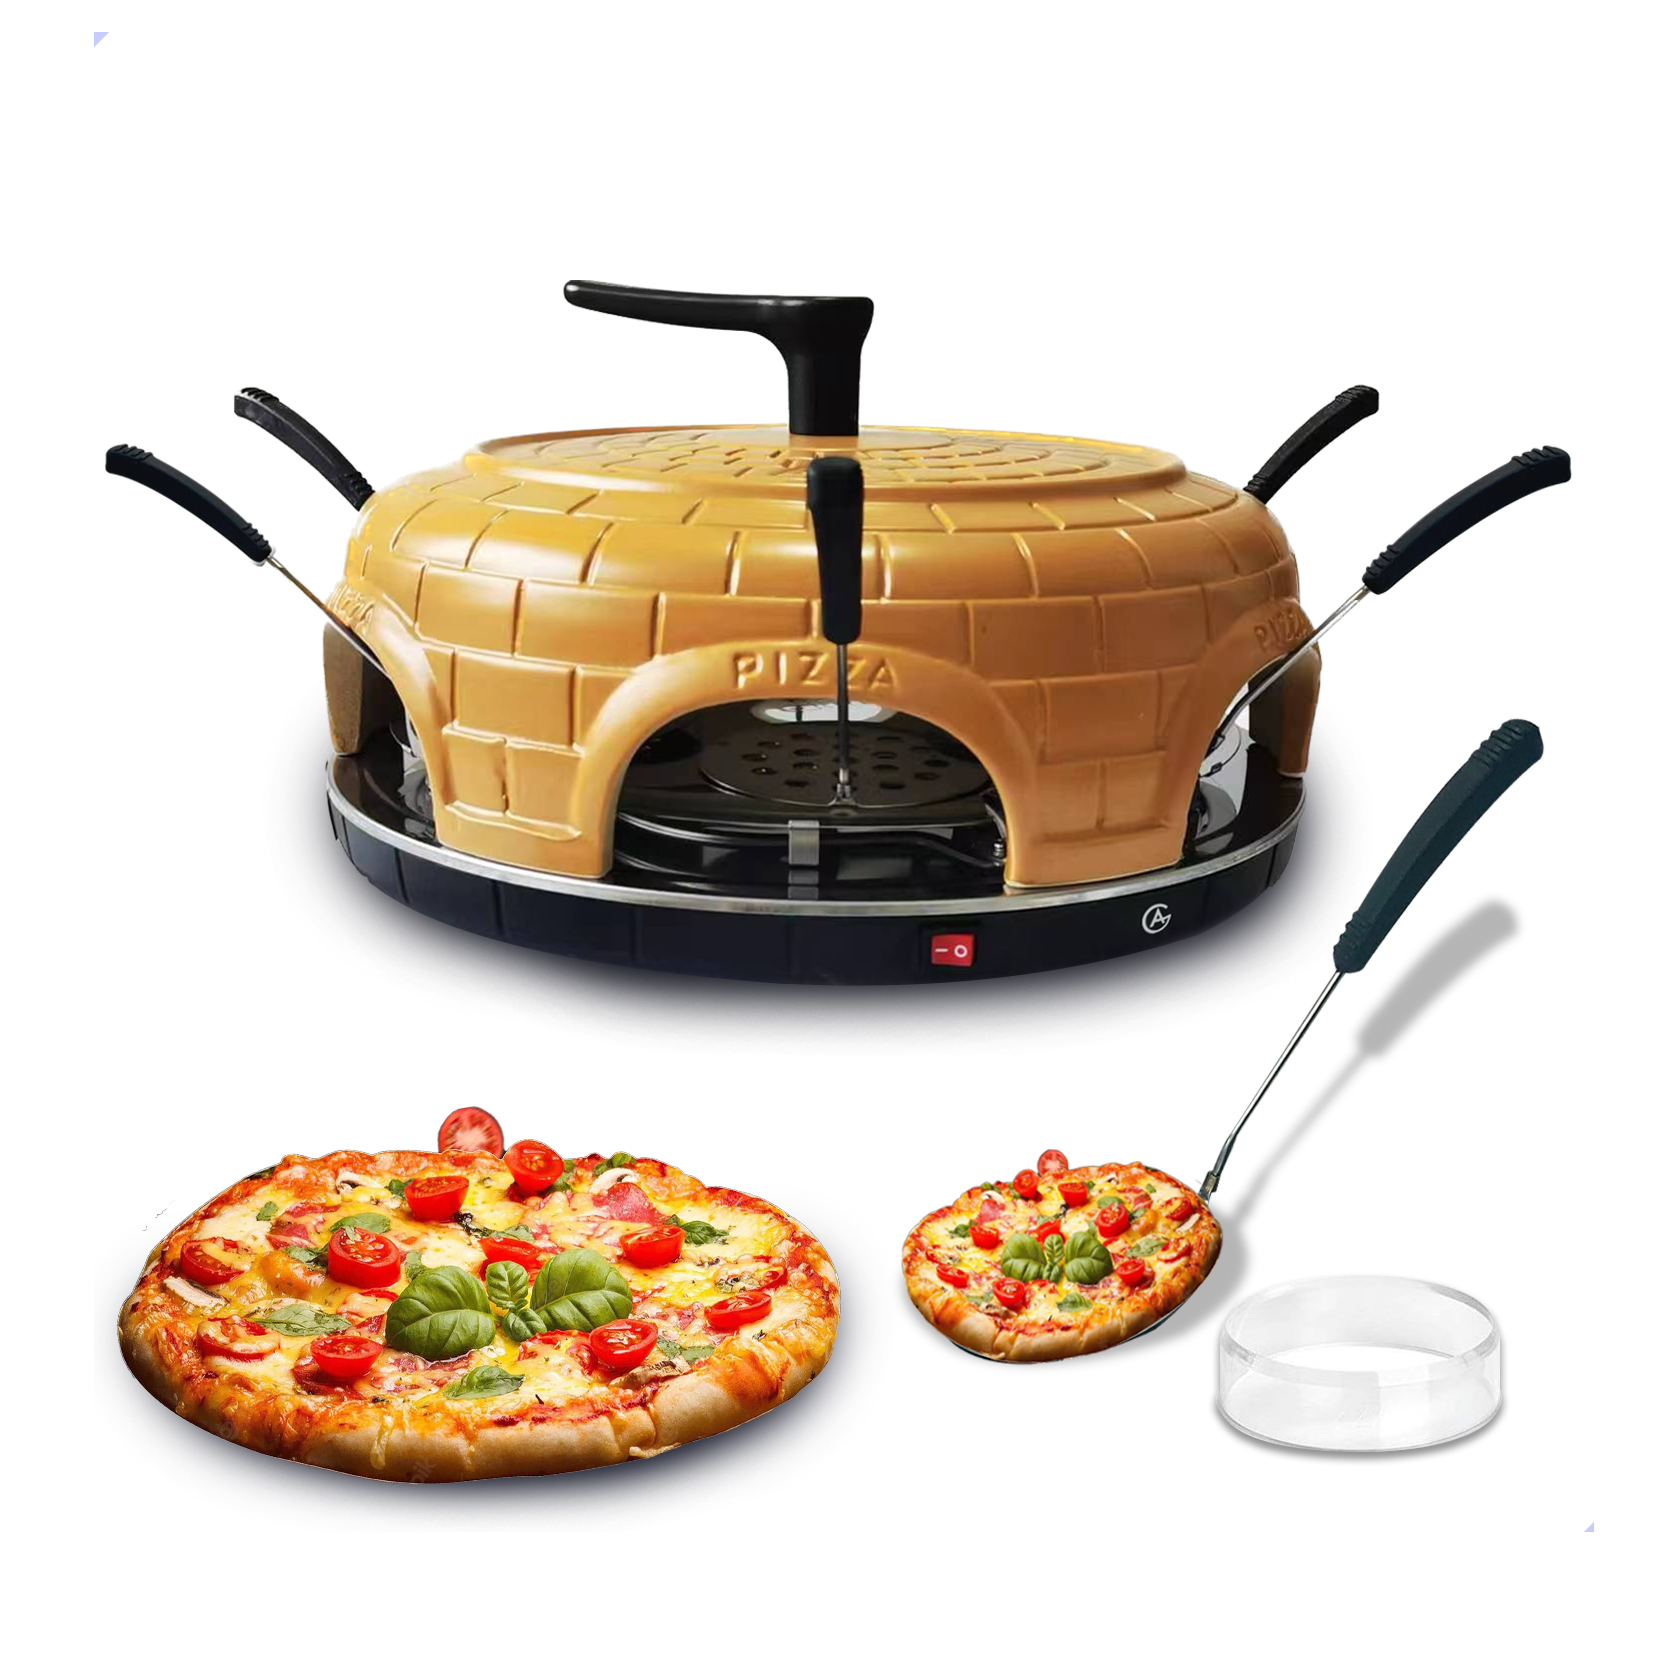 AG280 Pizza Oven 6 personen- Elecktrische Pizza Oven – Handgemaakte terracotta keramiek geglazuurd – Inclusief handvat